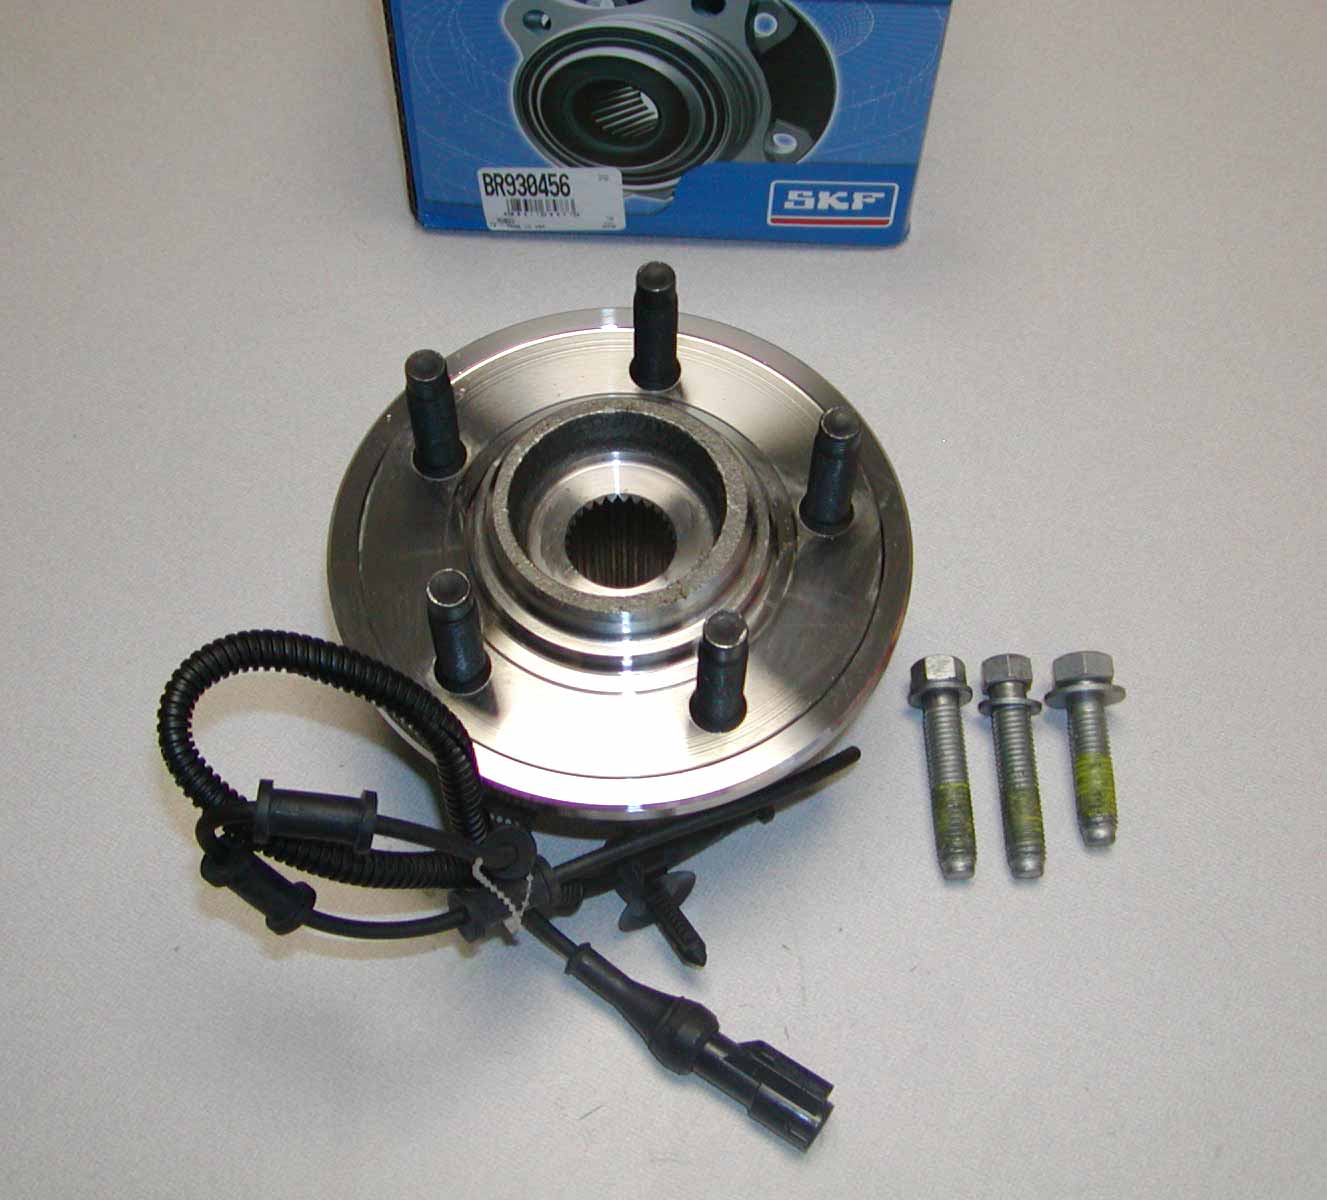 2002 Ford explorer wheel bearing noise